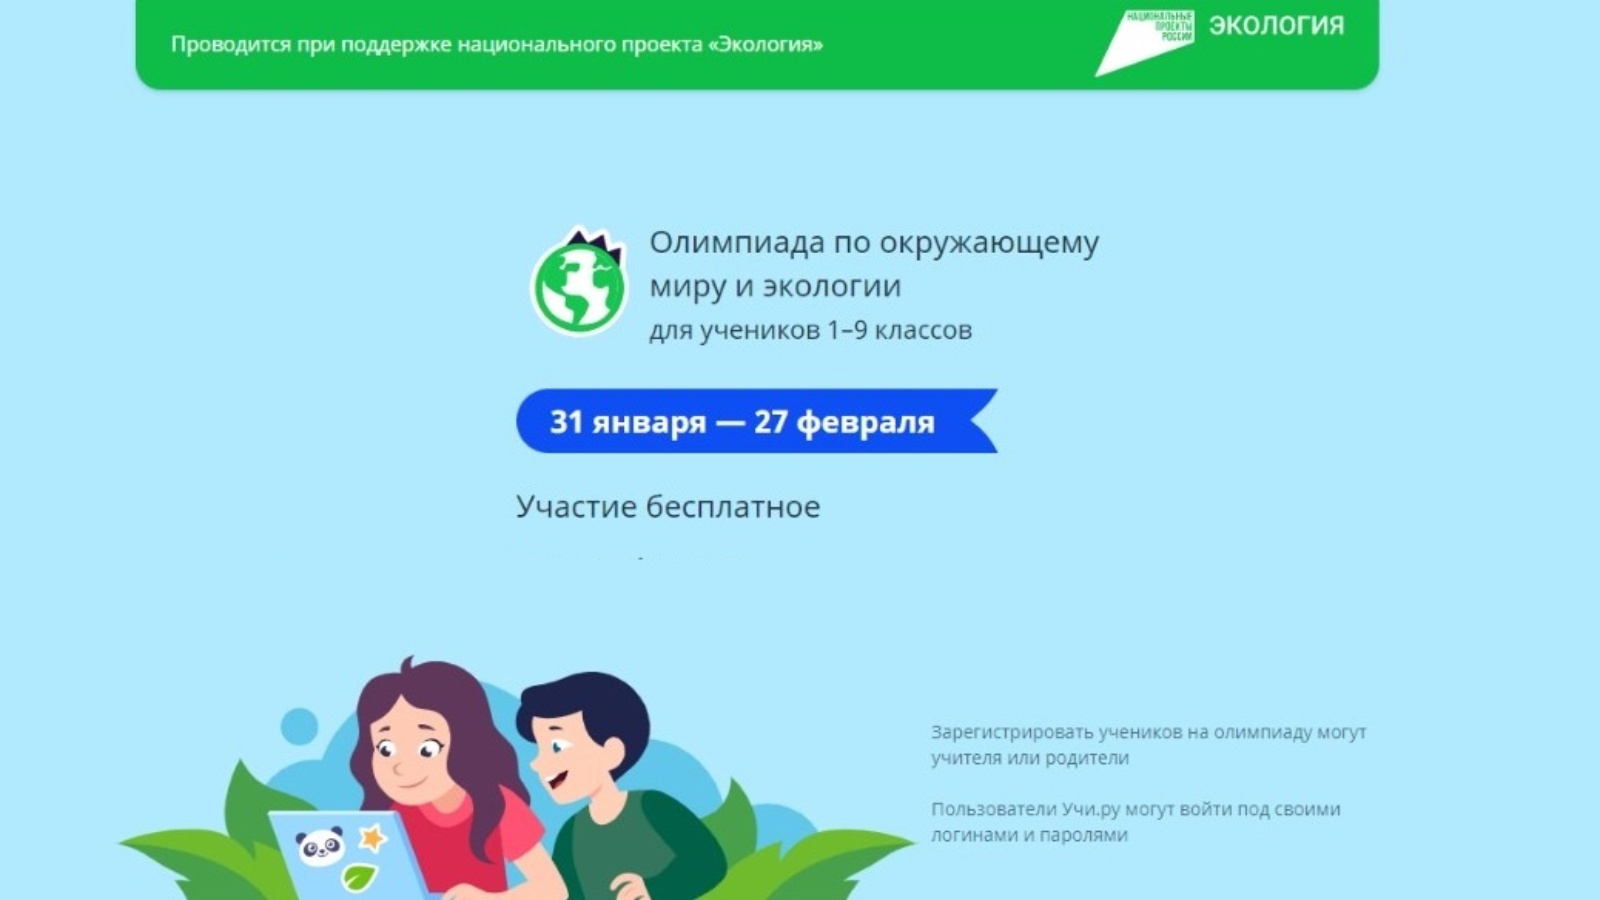 Олимпиада в поддержку нацпроекта «Экология» пройдет на платформе Учи.ру